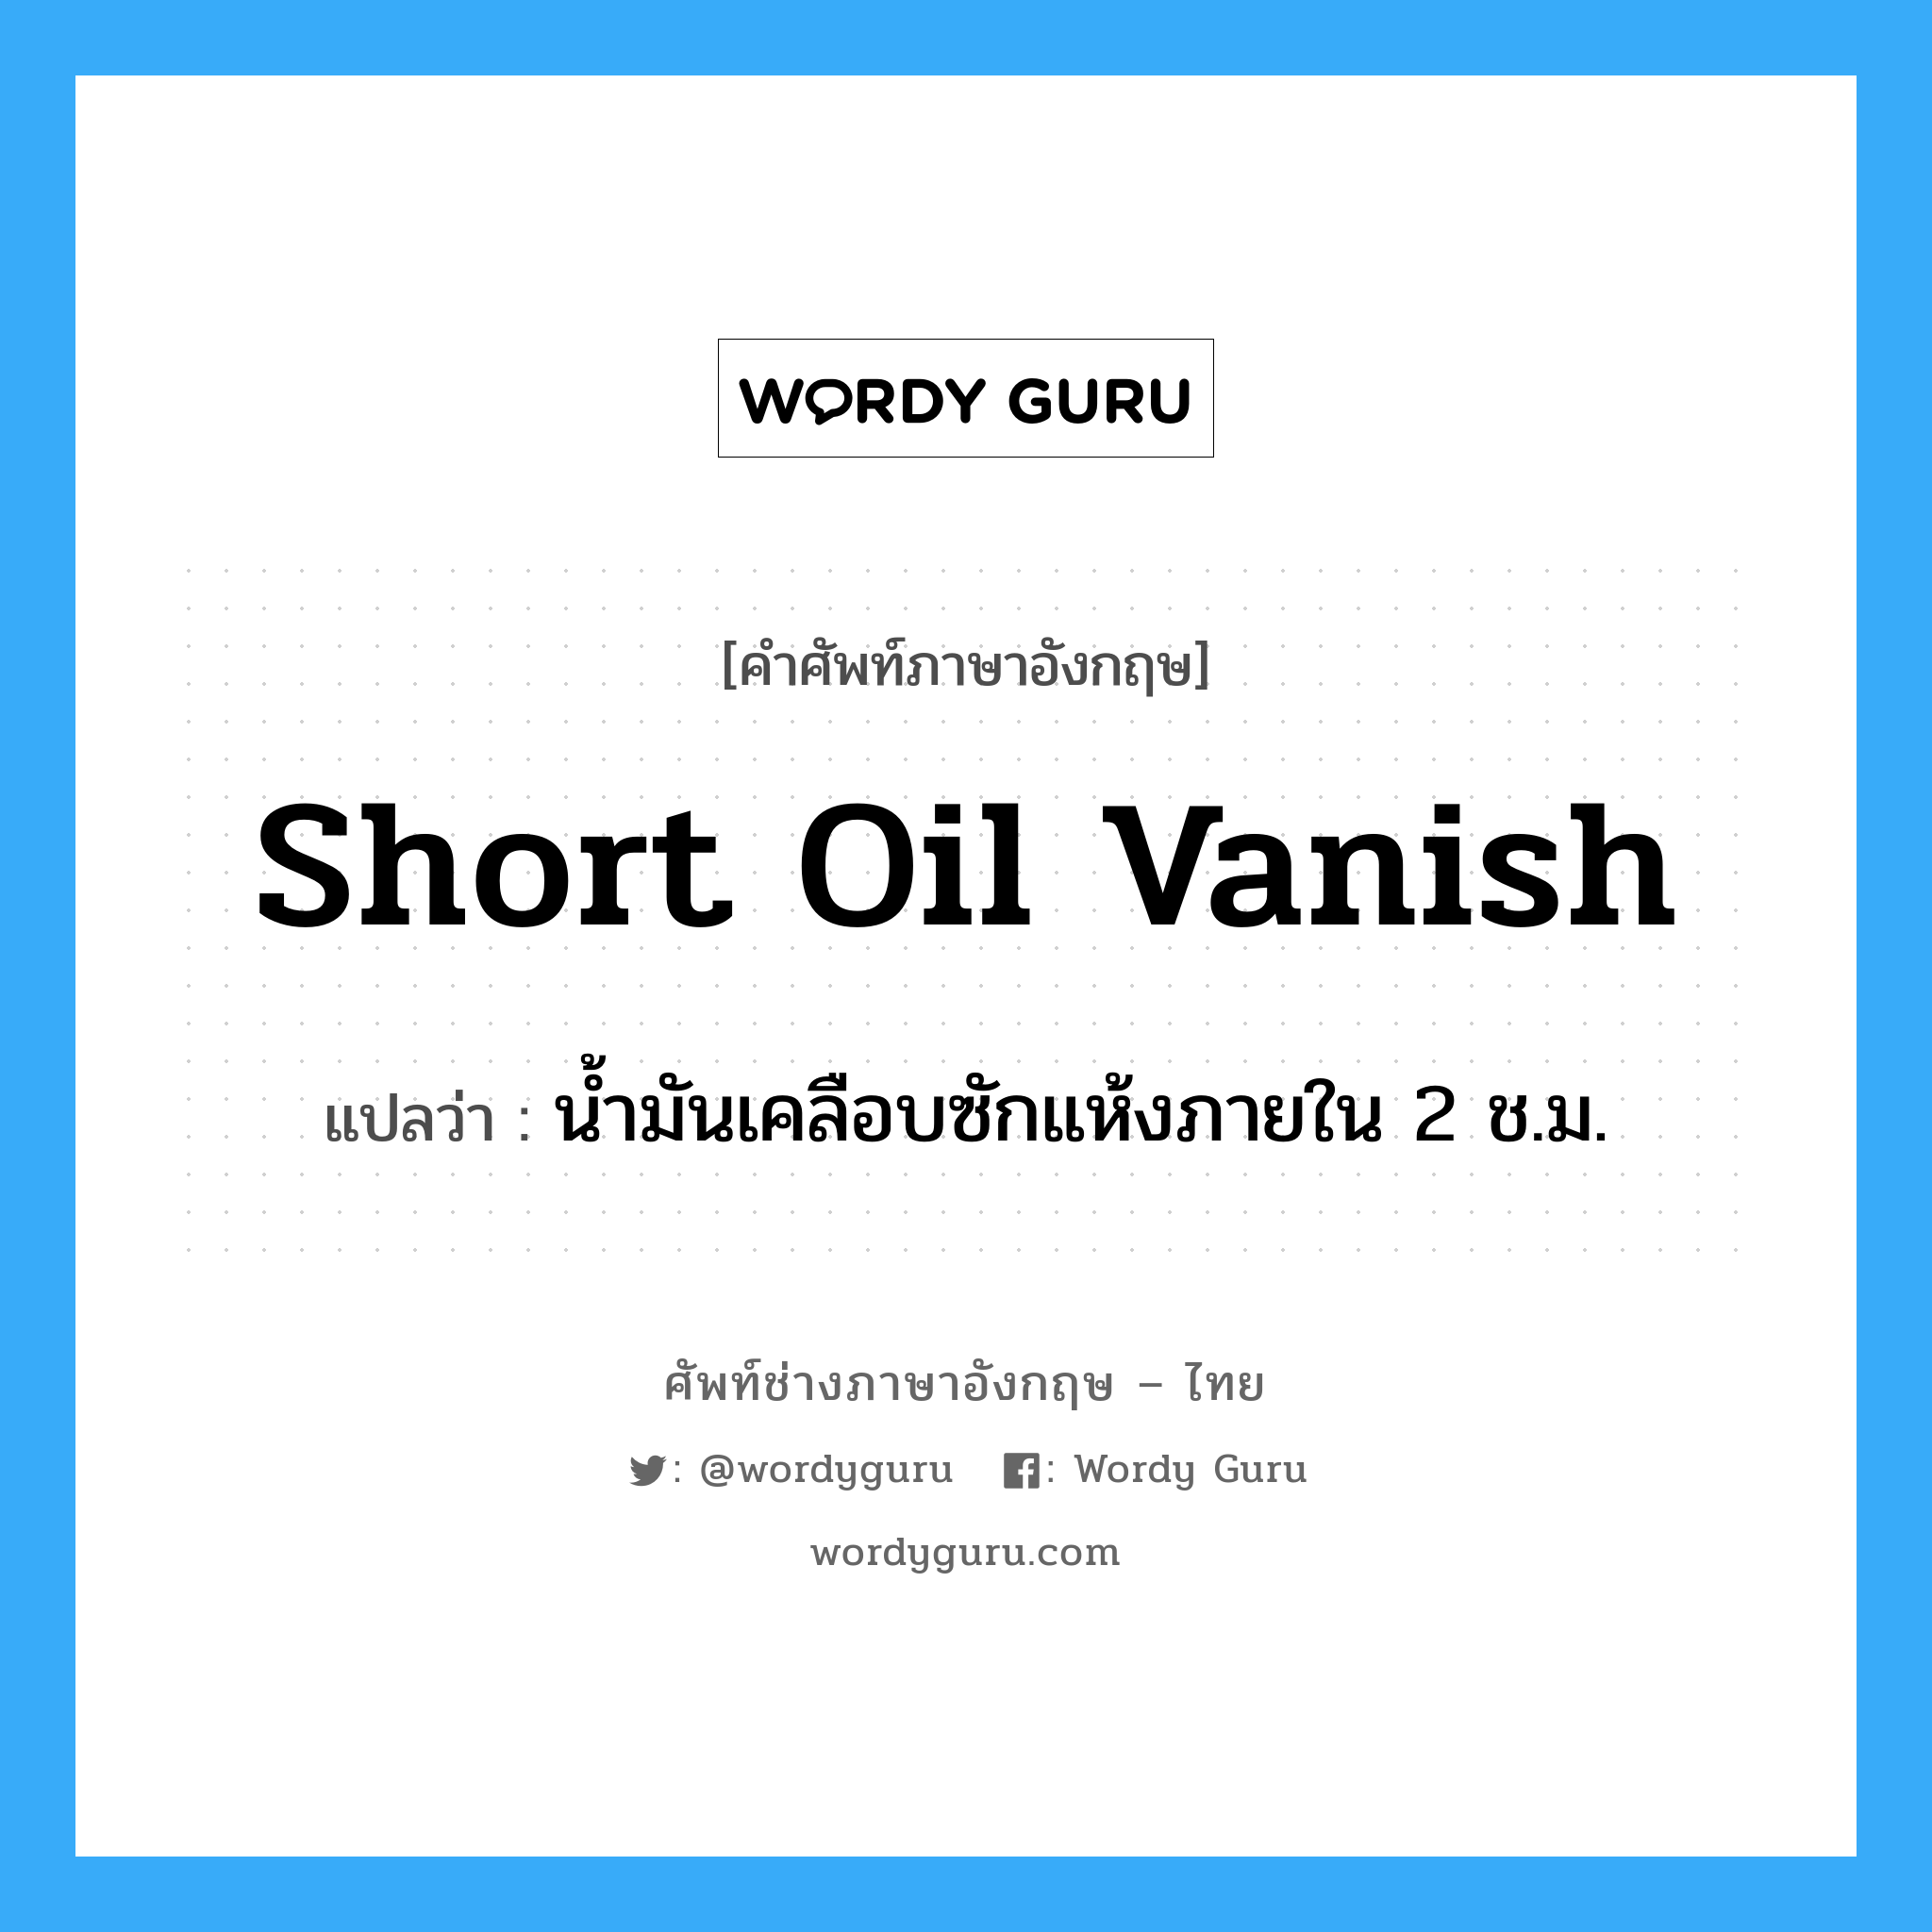 short oil vanish แปลว่า?, คำศัพท์ช่างภาษาอังกฤษ - ไทย short oil vanish คำศัพท์ภาษาอังกฤษ short oil vanish แปลว่า น้ำมันเคลือบซักแห้งภายใน 2 ช.ม.